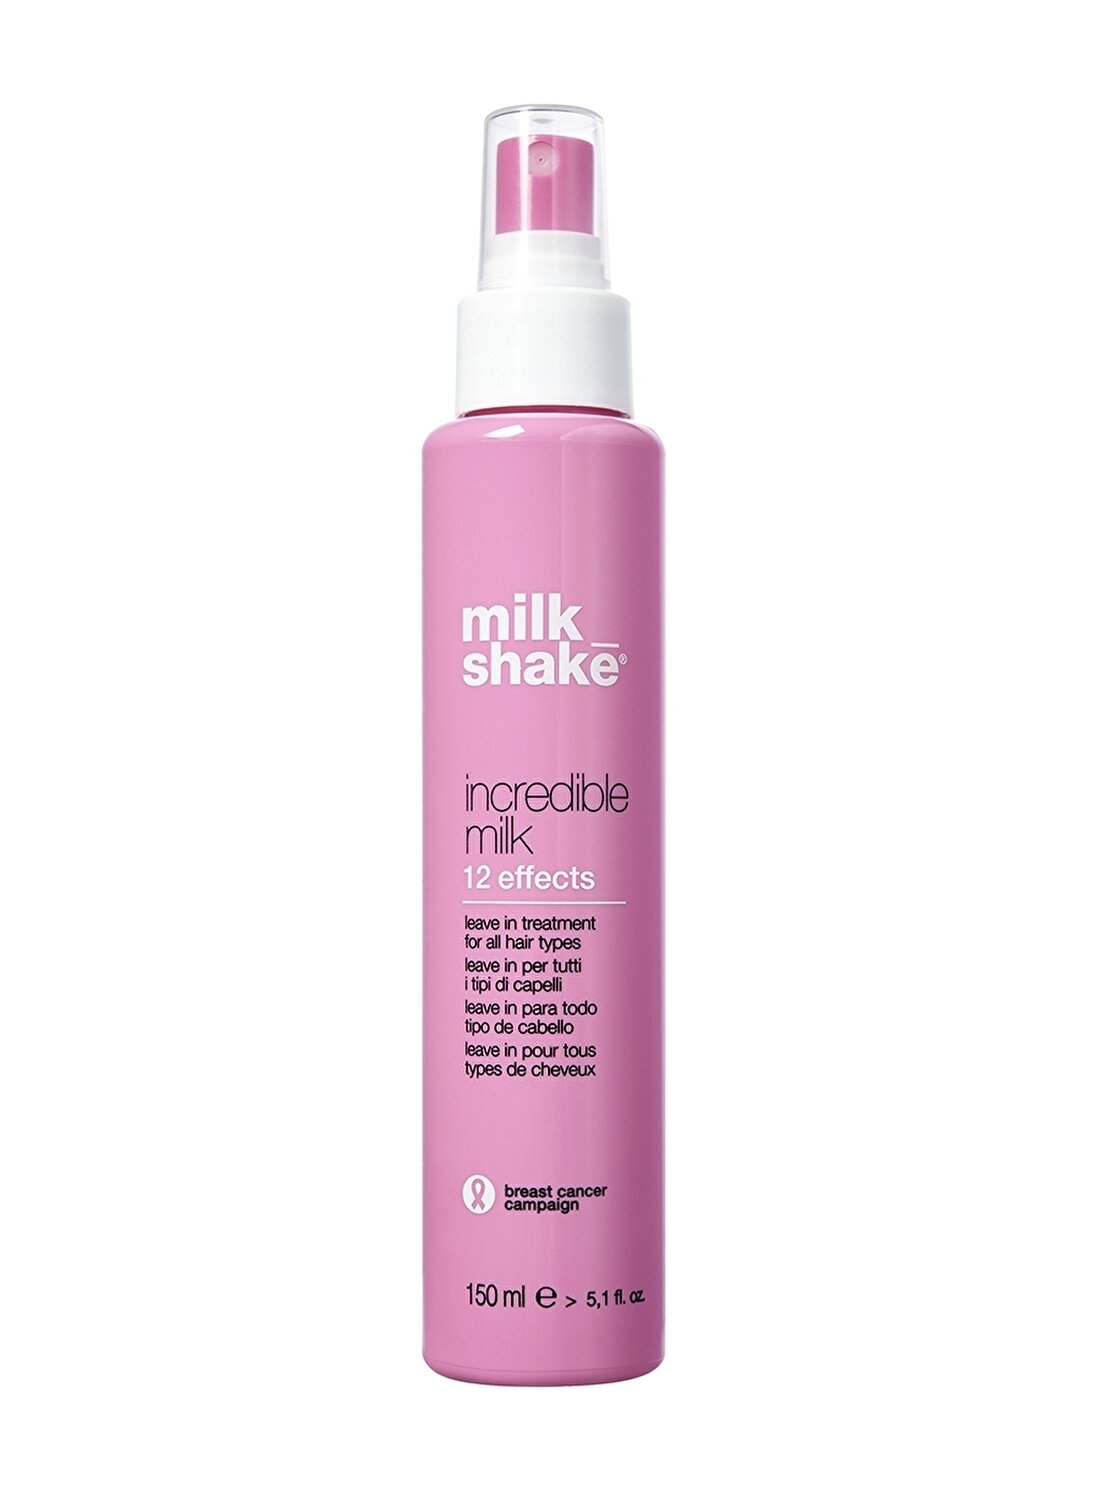 Milkshake Incredible Milk 150 Ml Saç Bakım Kürü